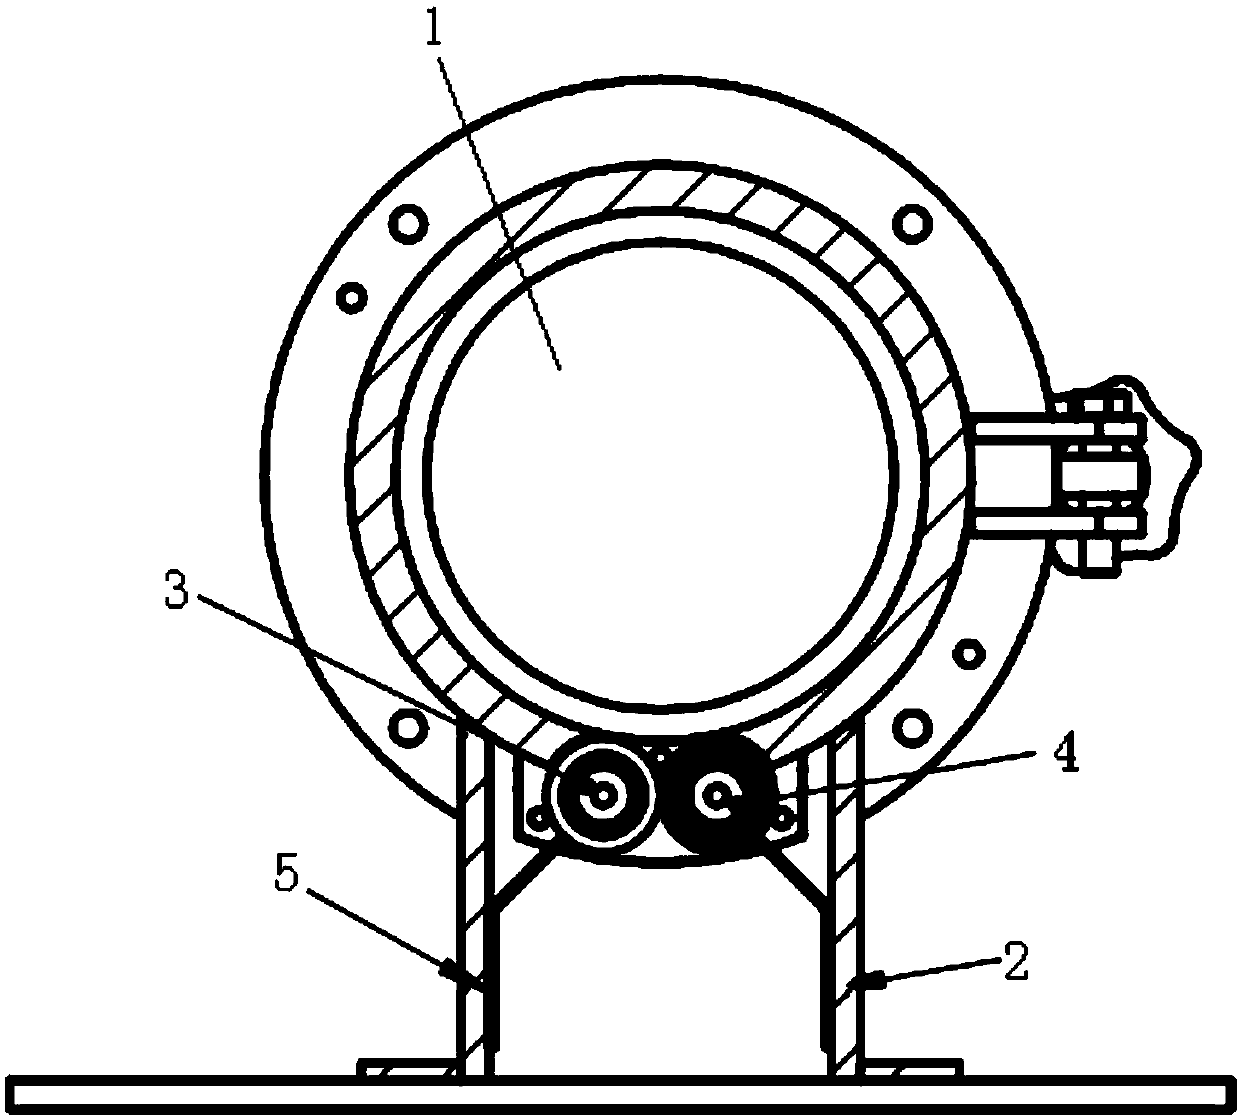 Double-screen-roller discharging mechanism